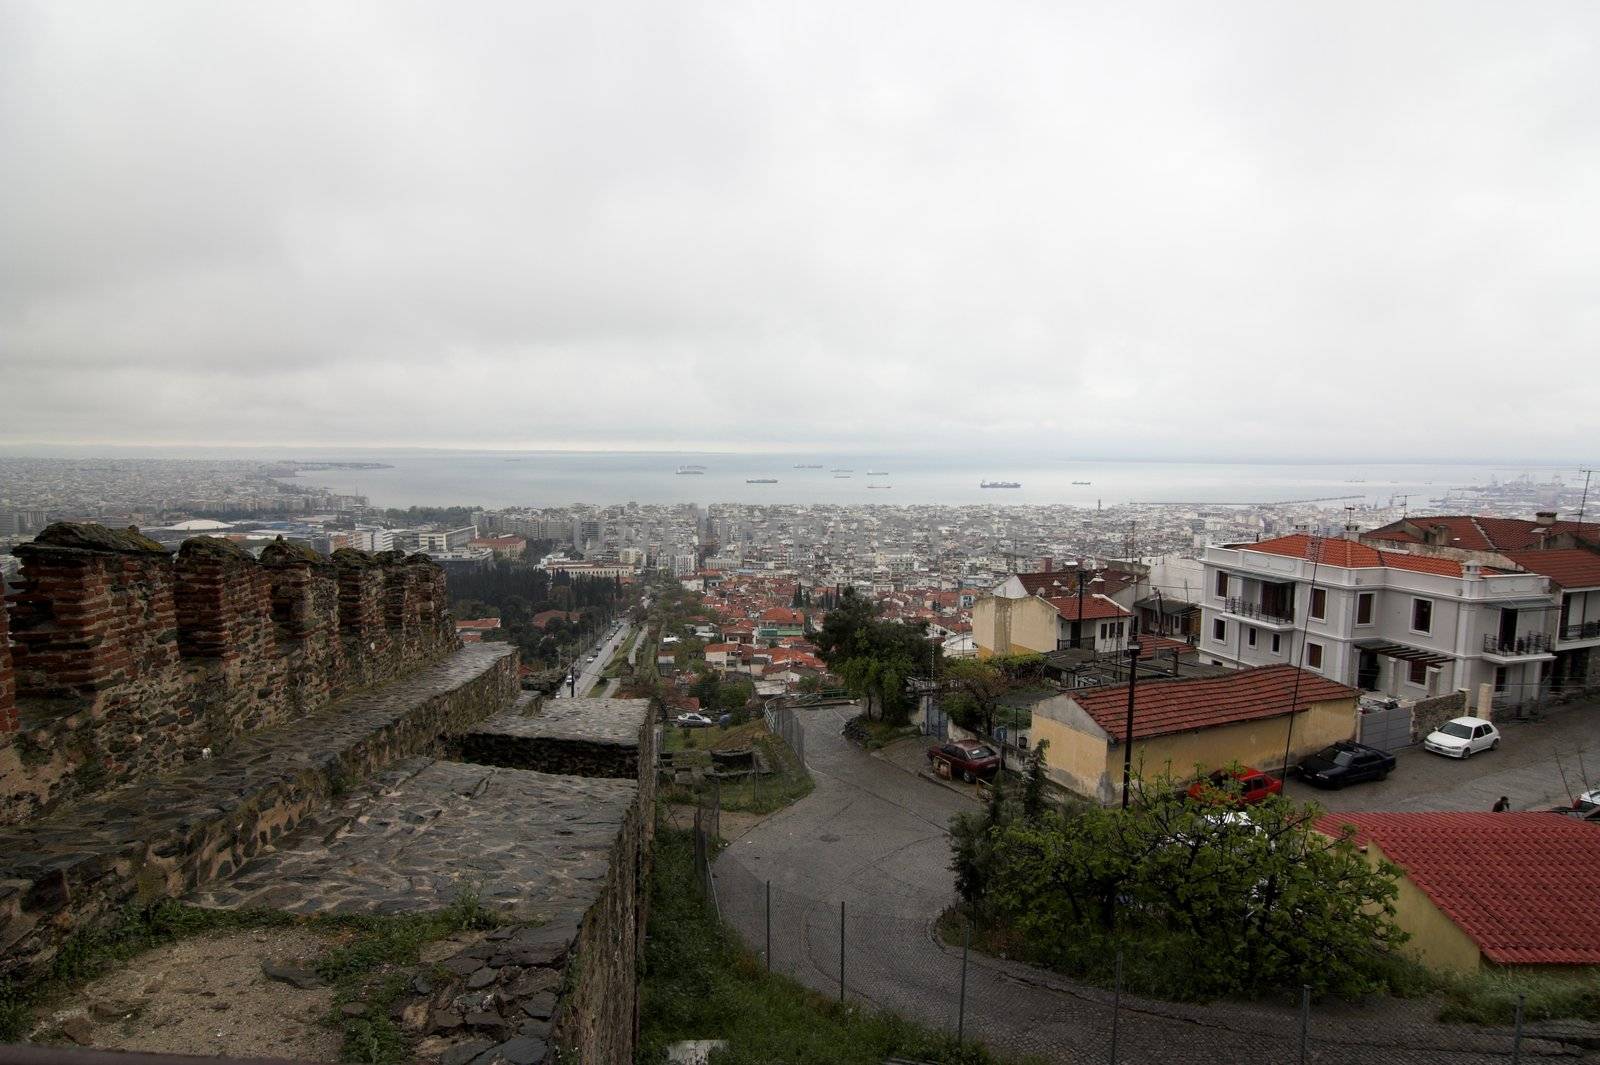 city of Thessaloniki by alexkosev